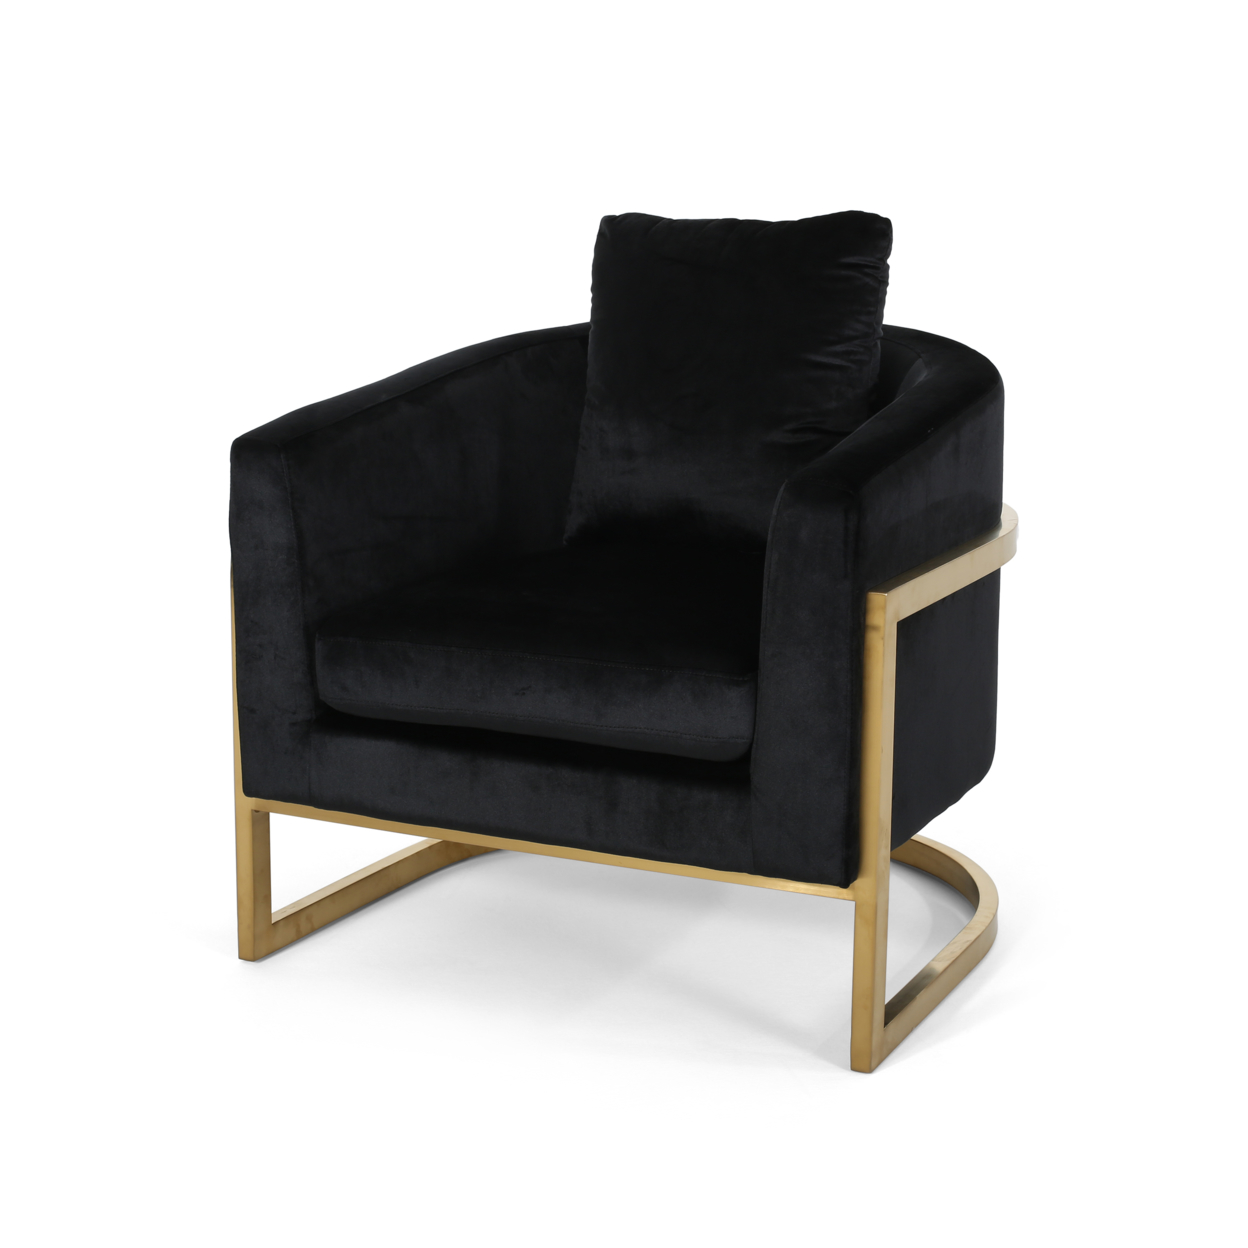 Chloe Modern Velvet Glam Armchair With Stainless Steel Frame - Navy Blue + Gold